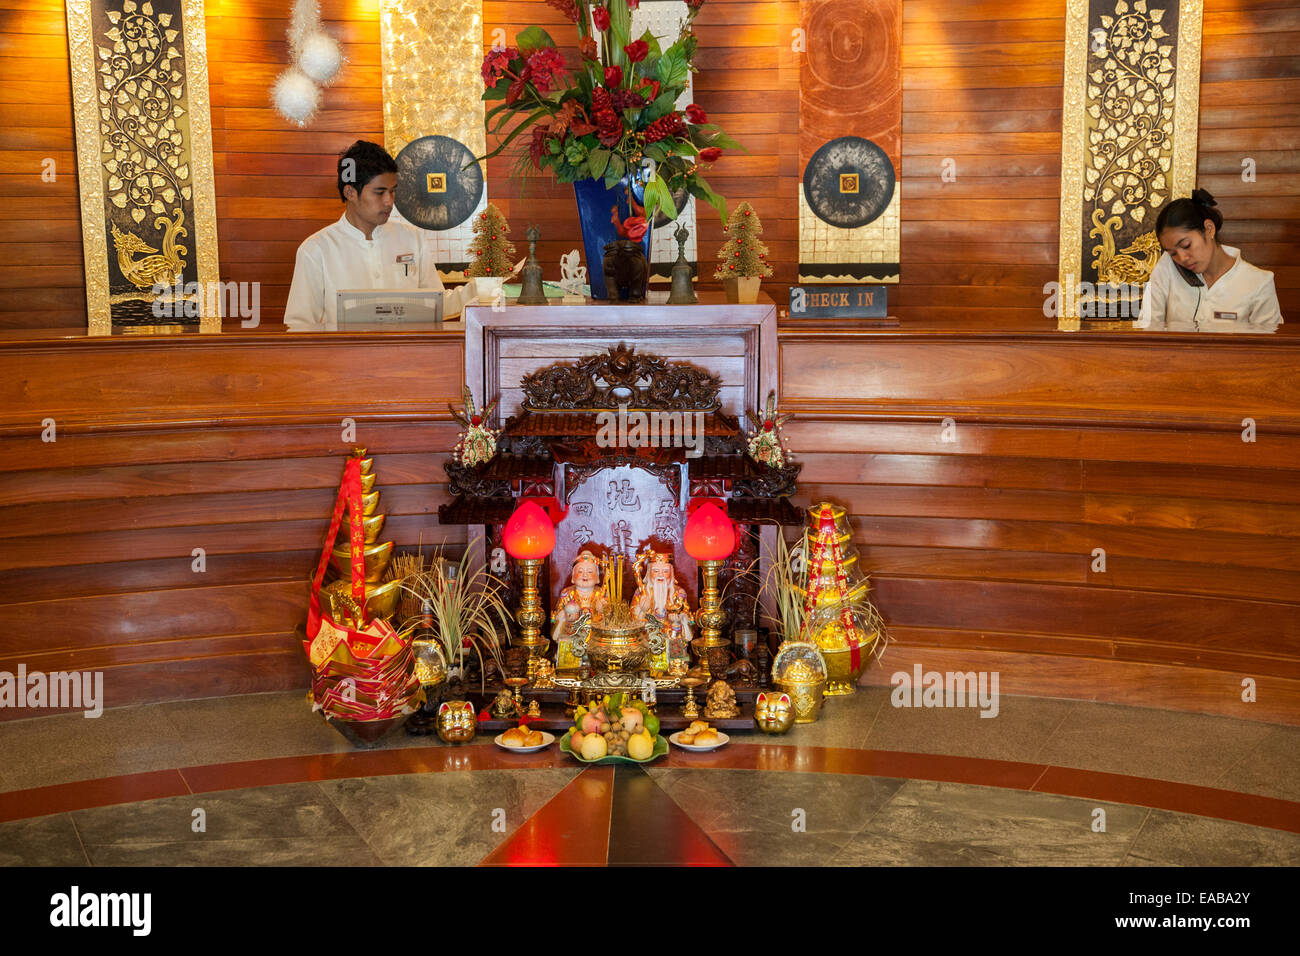 Kambodscha, Siem Reap.  Buddhistischen Schrein in der Lobby des Hotels. Stockfoto